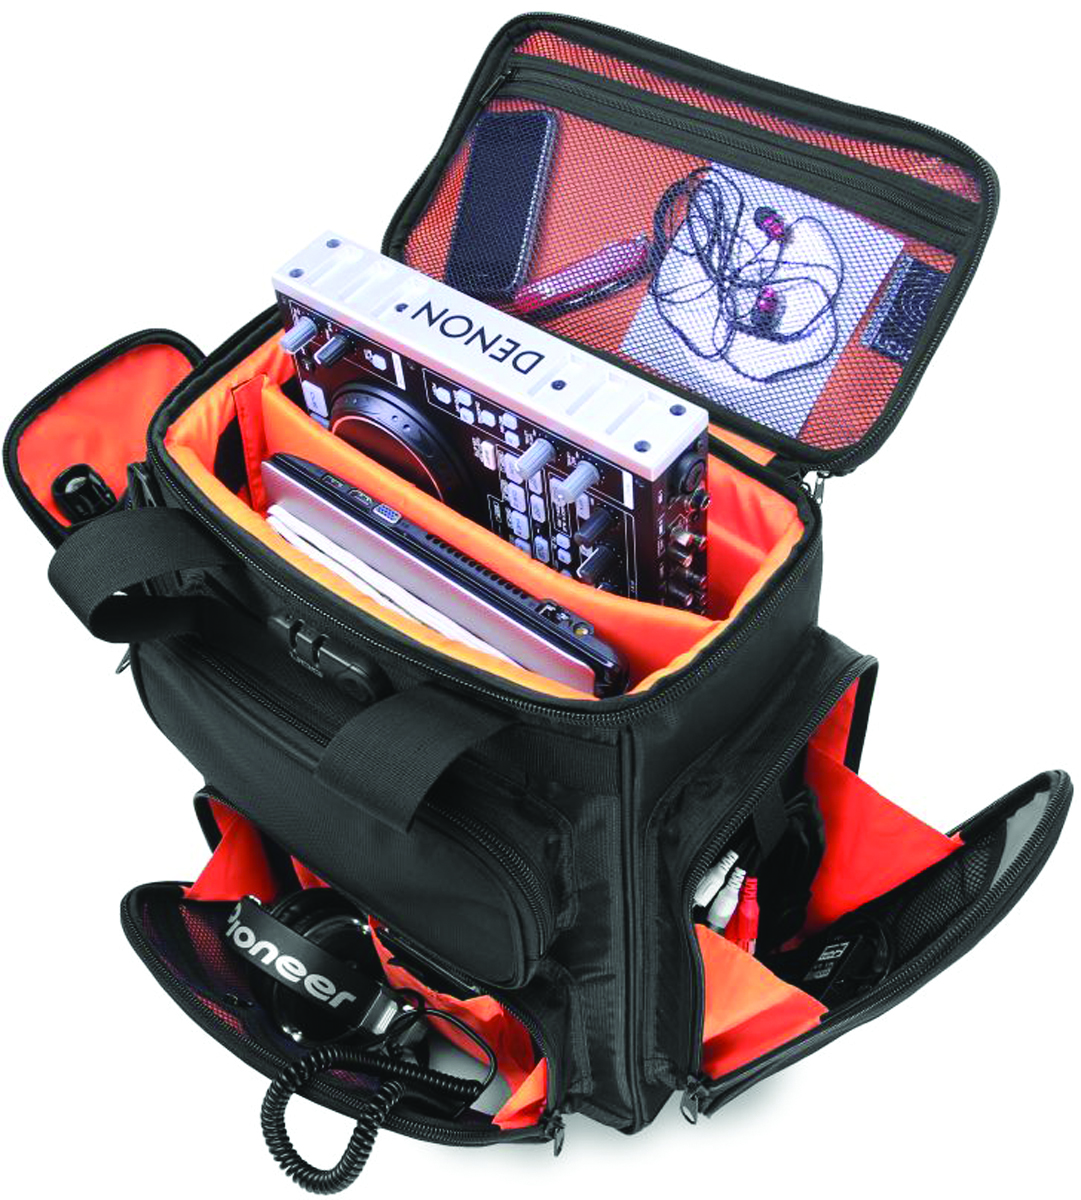 Udg Ultimate Producerbag Large Black/orange - Sac Transport Trolley Dj - Variation 2